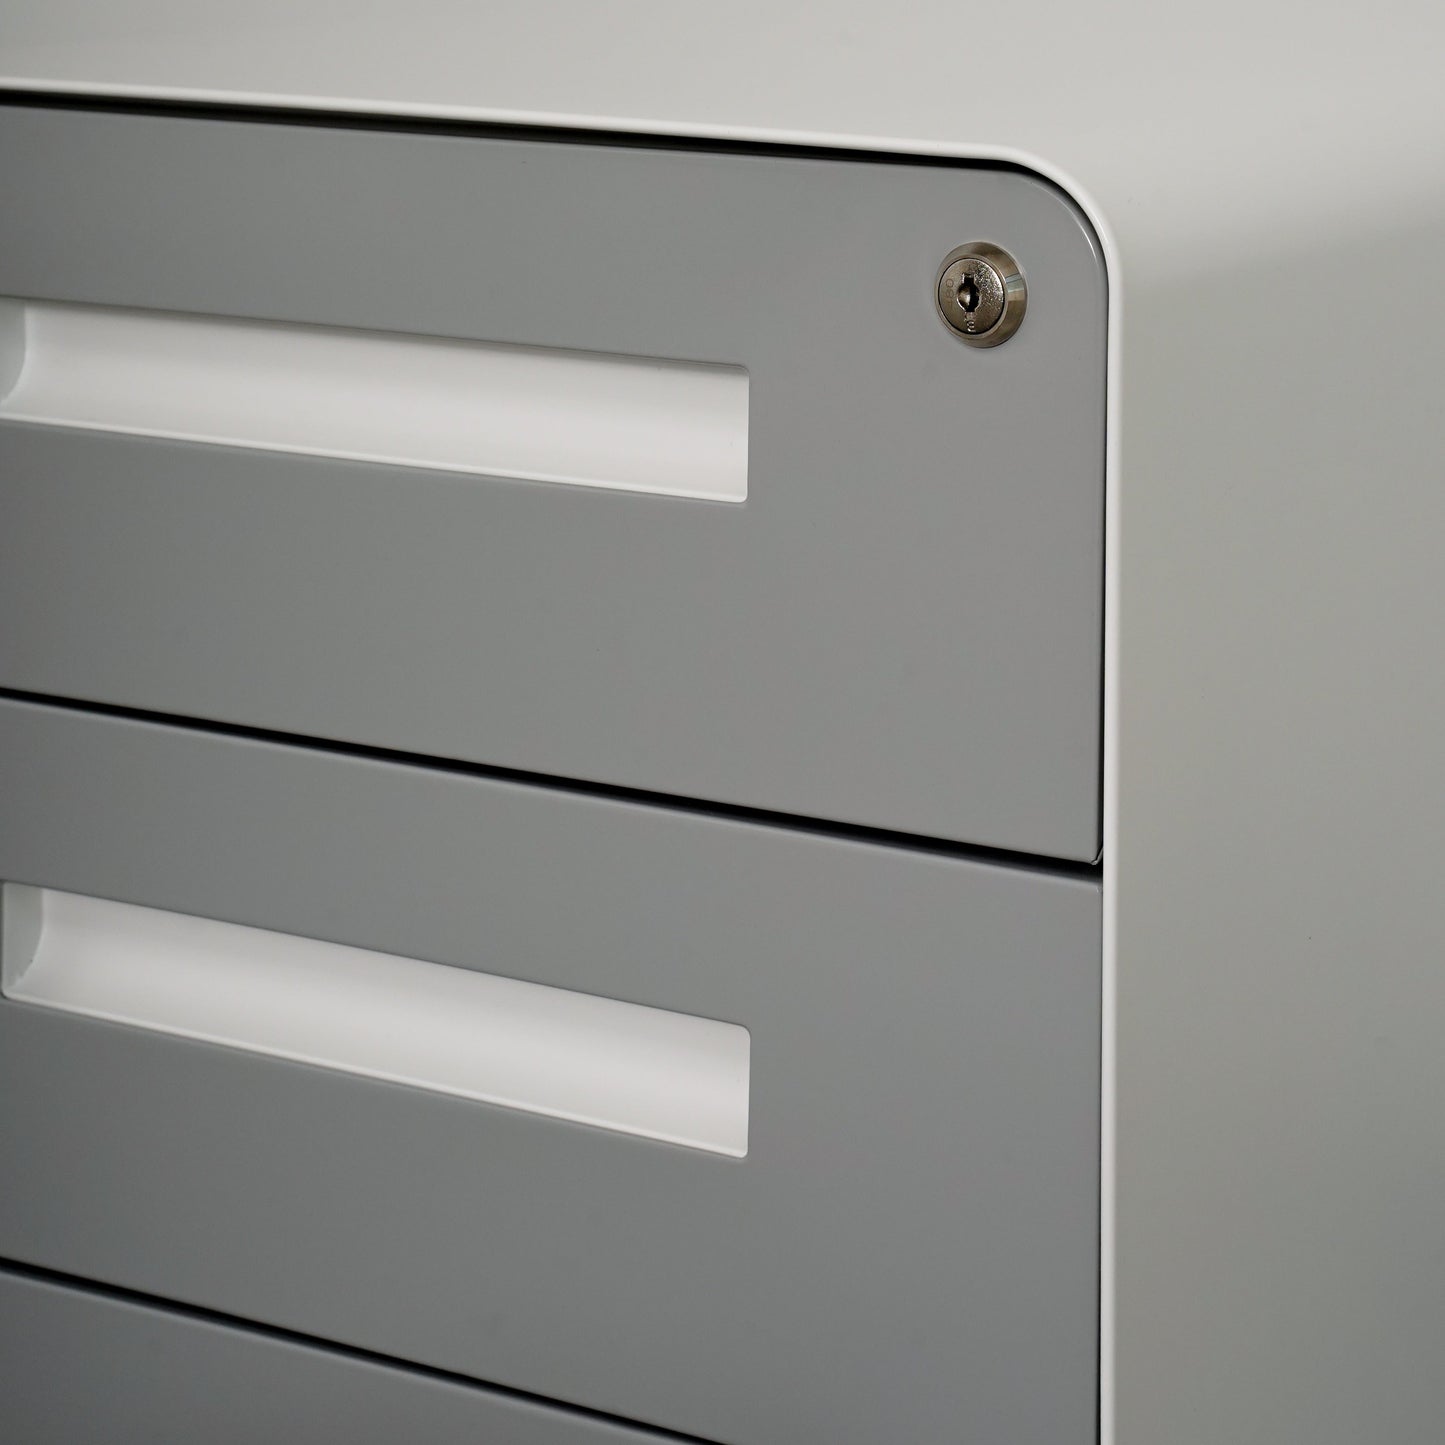 Stockpile Curve File Cabinet (Light Grey Faceplate)